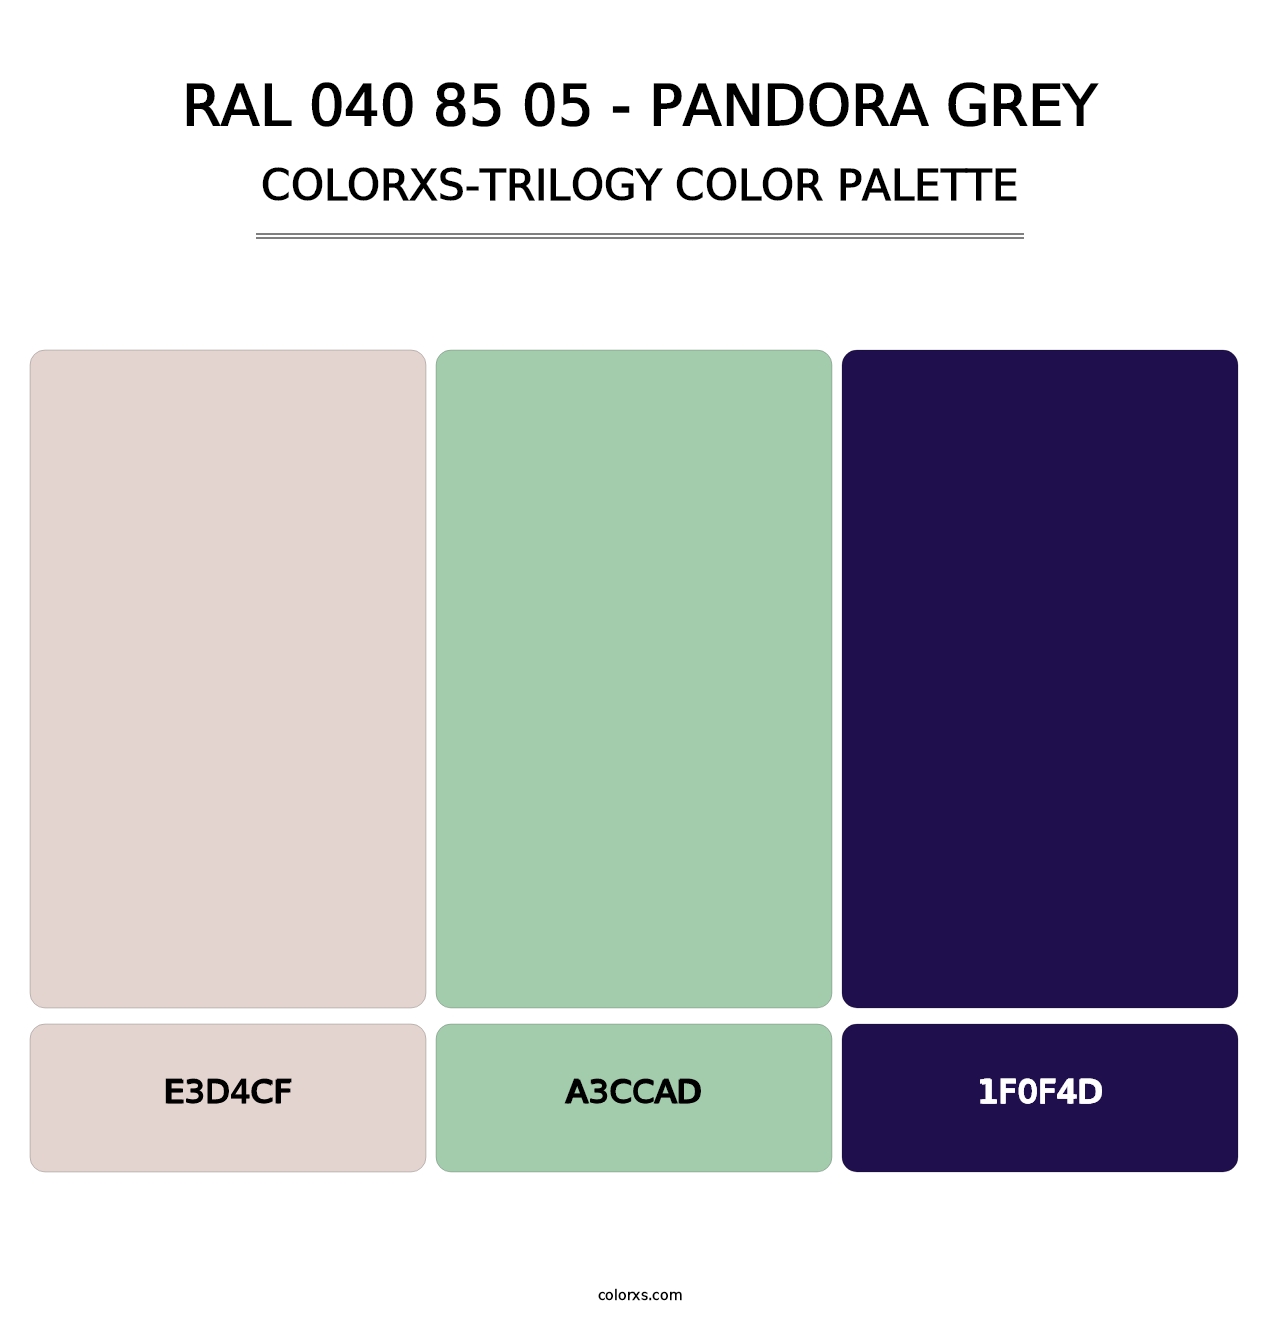 RAL 040 85 05 - Pandora Grey - Colorxs Trilogy Palette